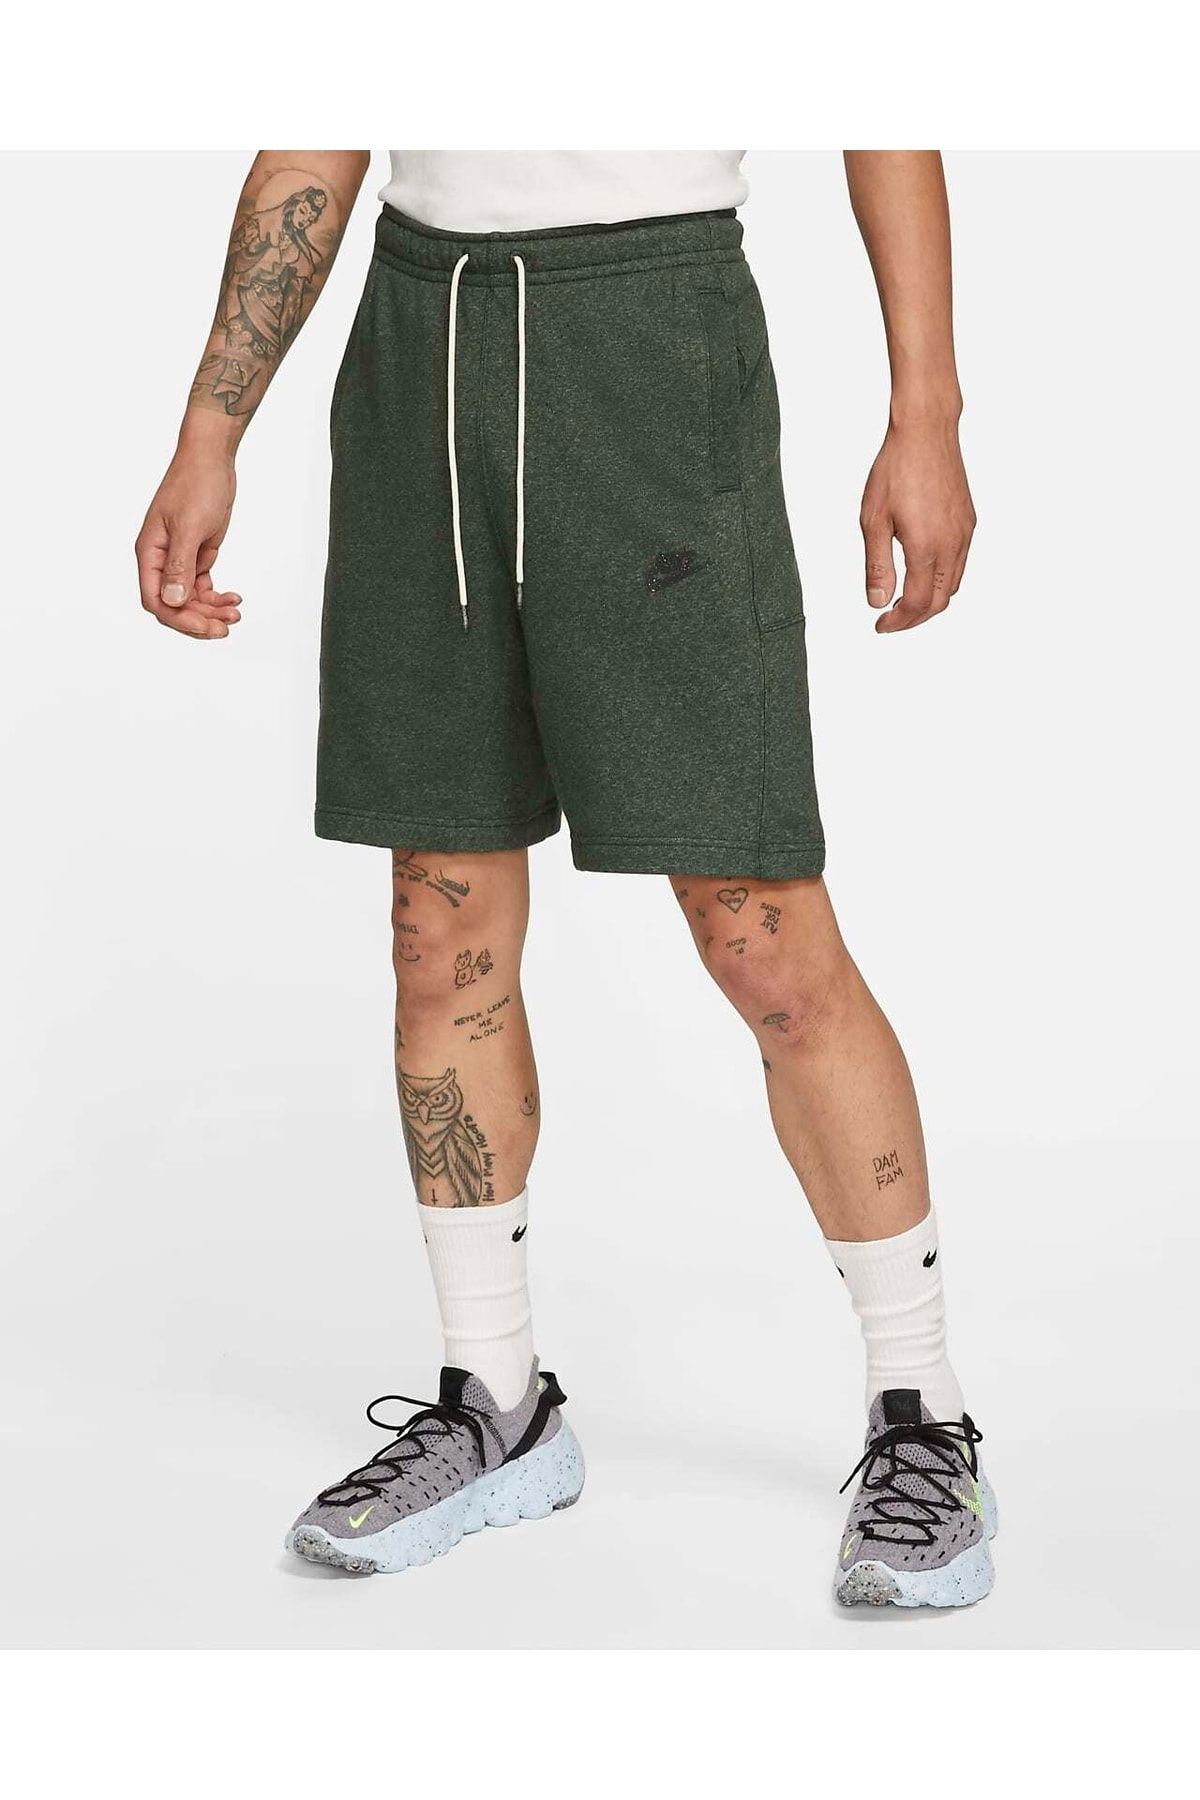 Nike Sportswear Revival Fleece Erkek Şort Da0688-337